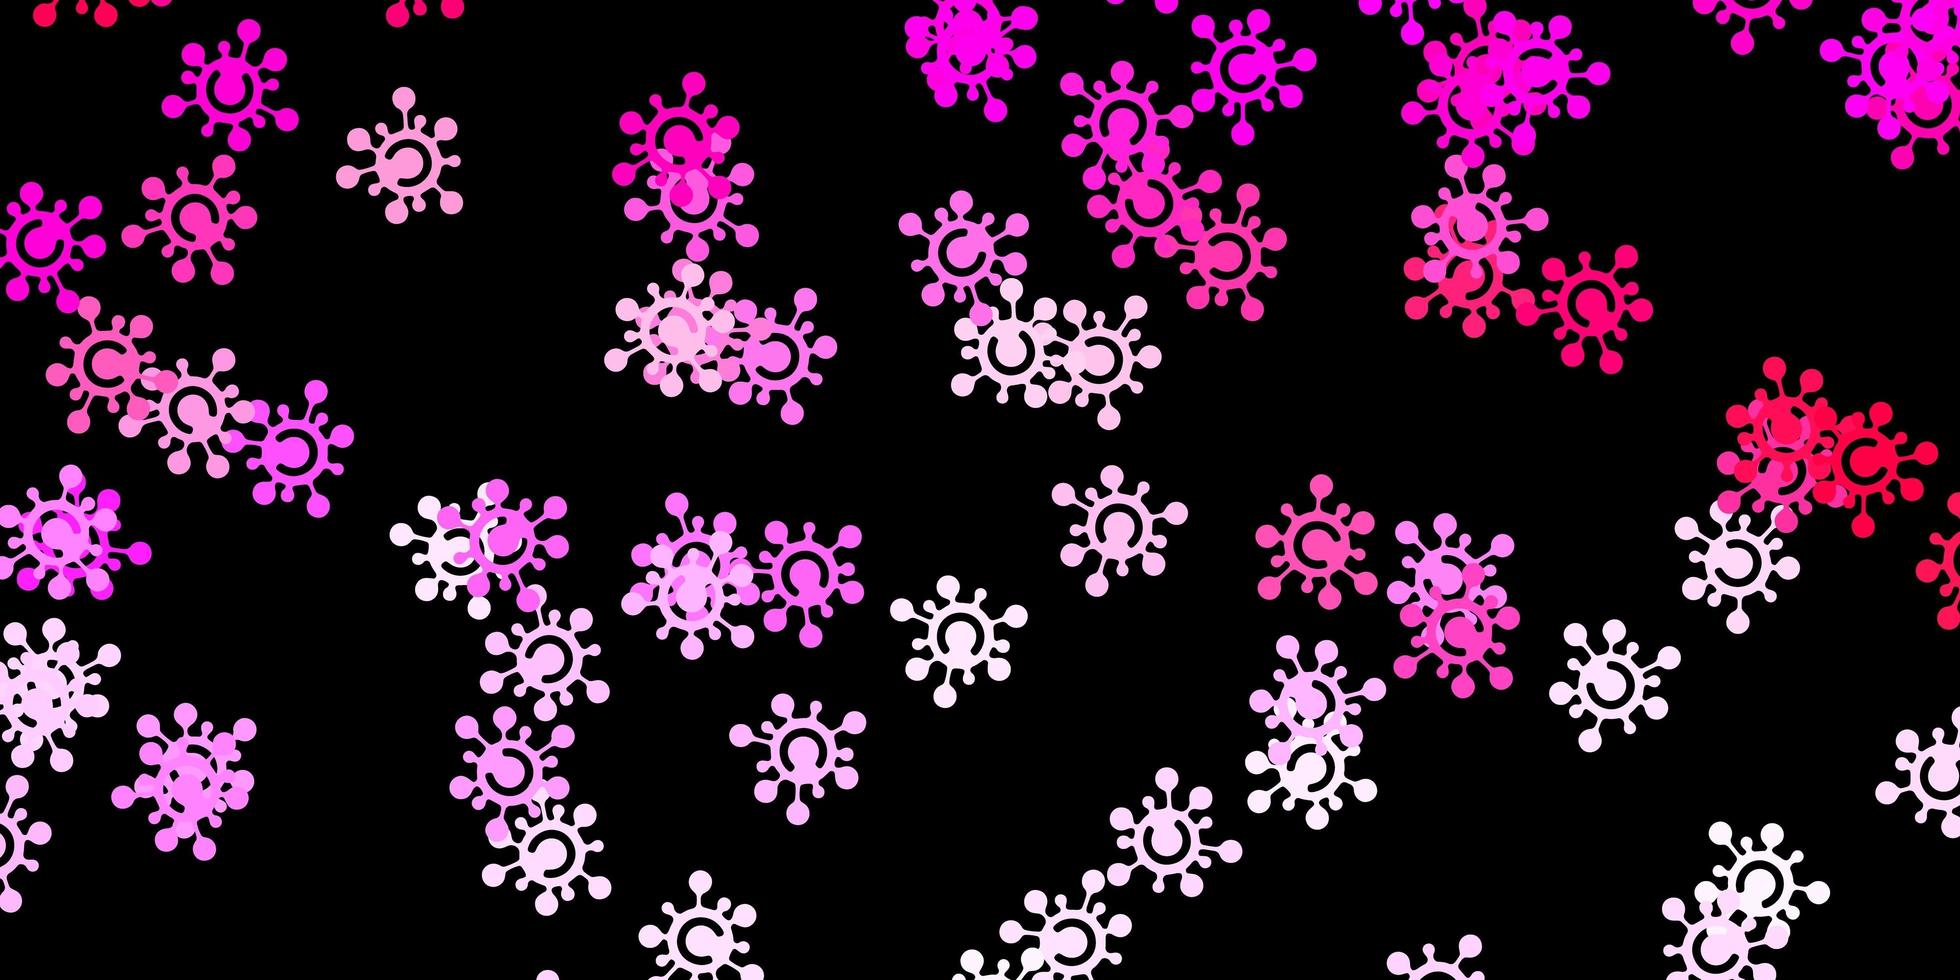 Telón de fondo de vector rosa oscuro con símbolos de virus.